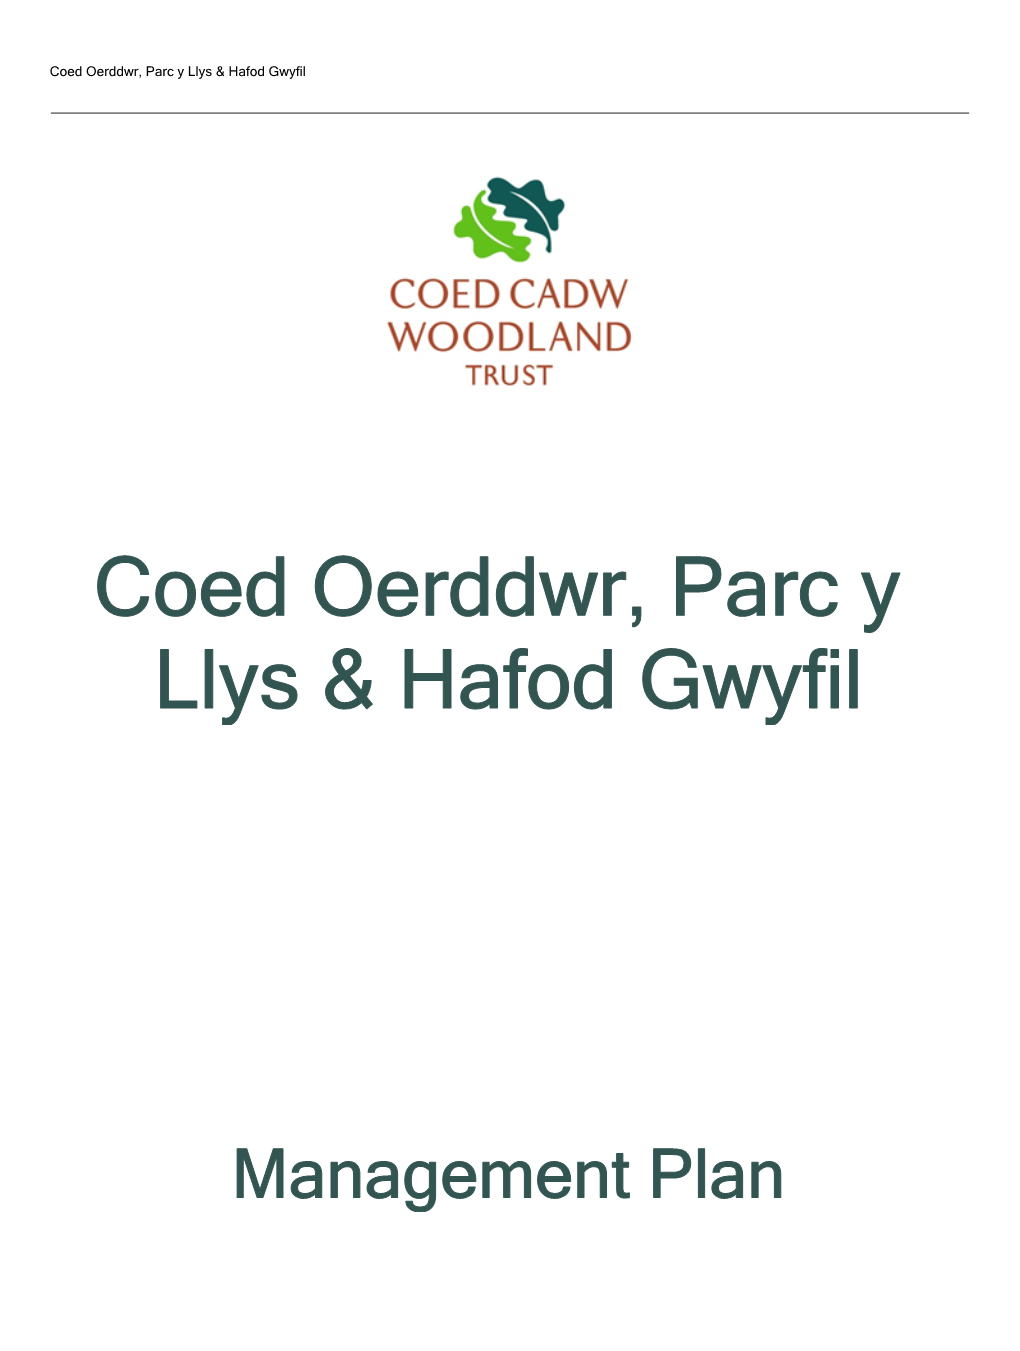 Coed Oerddwr, Parc Y Llys & Hafod Gwyfil